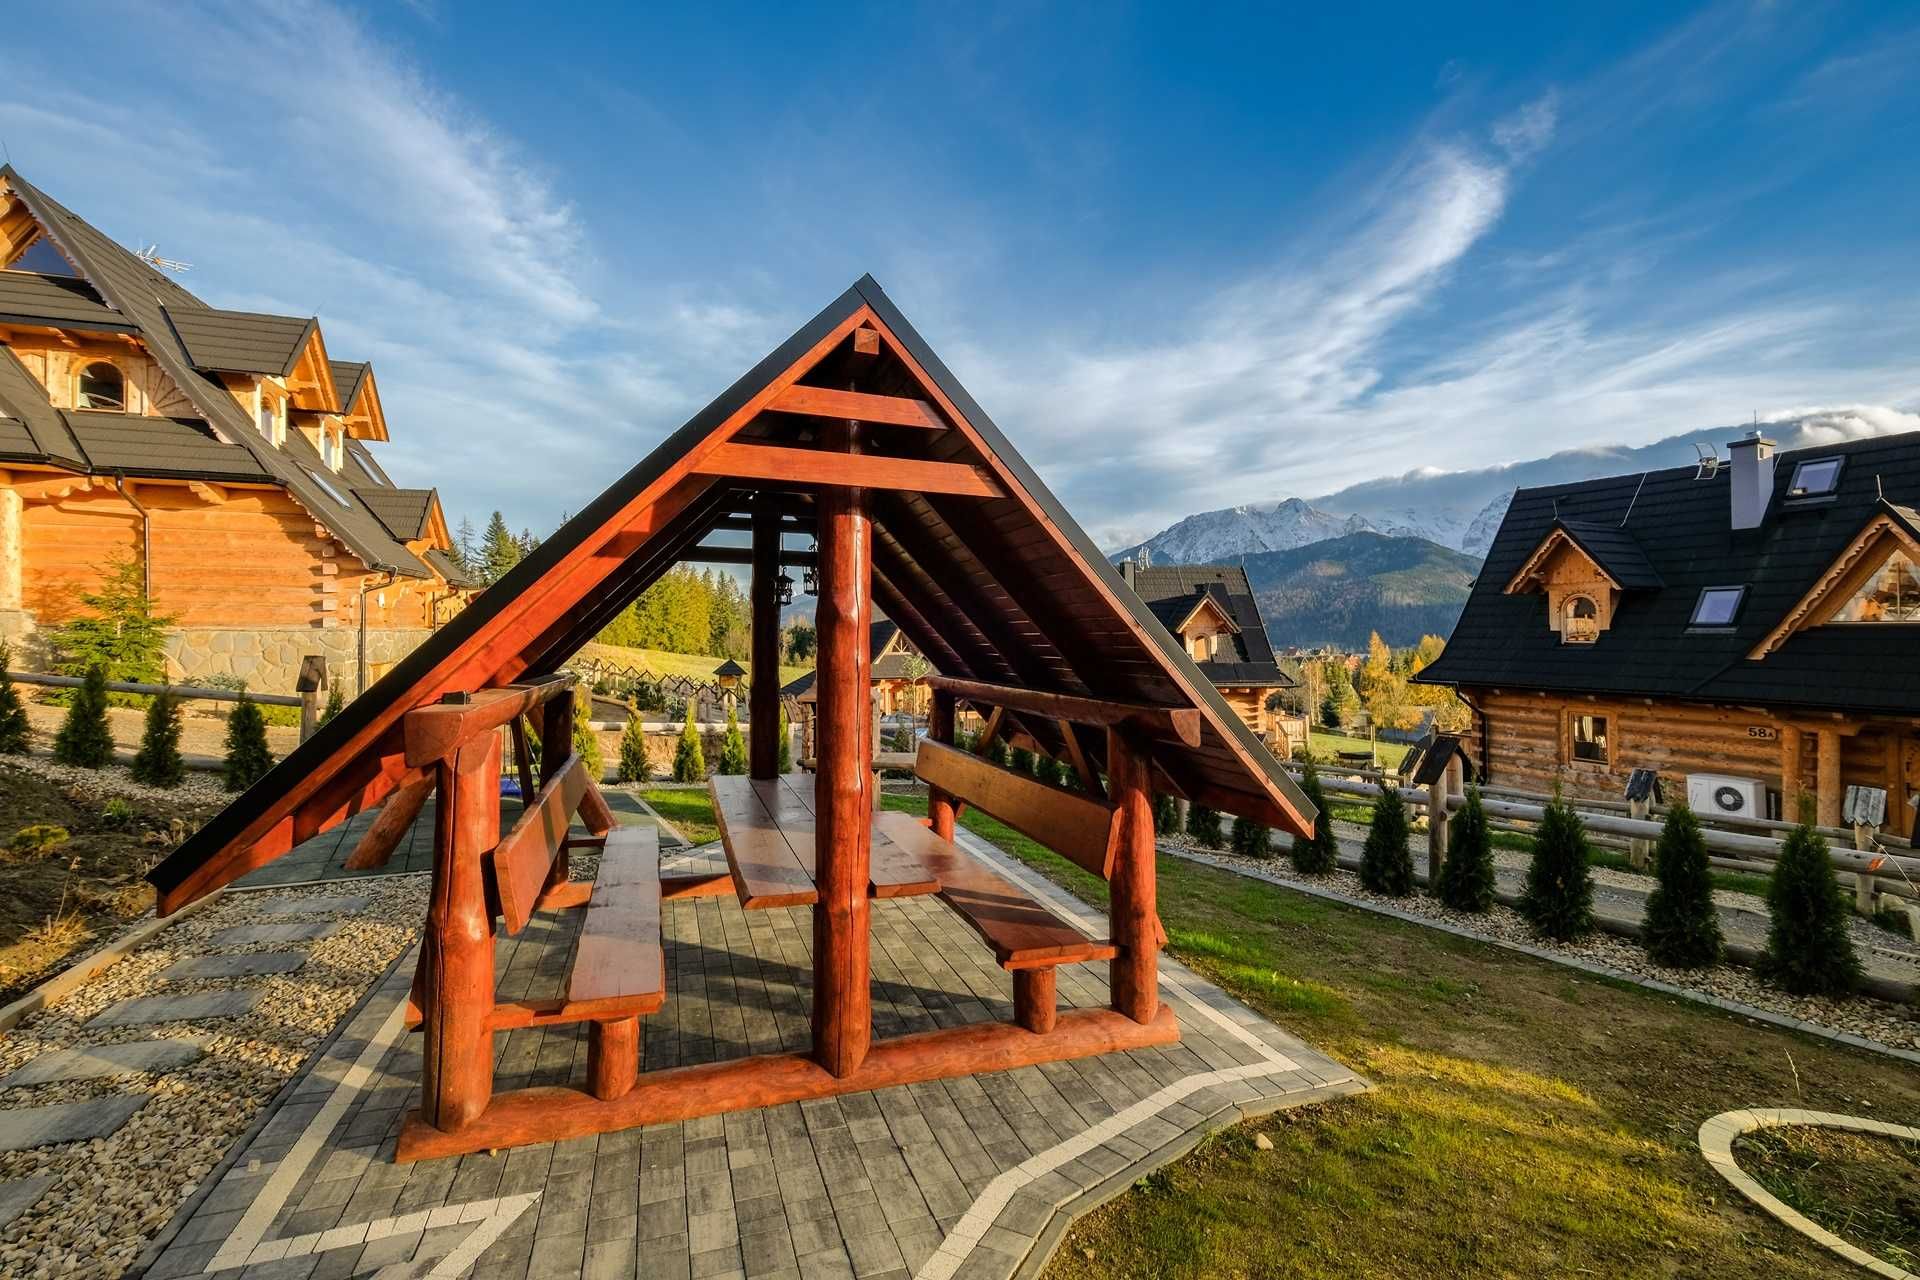 Domki Panorama Kościelisko sauna jacuzzi z widokiem na Tatry 8os